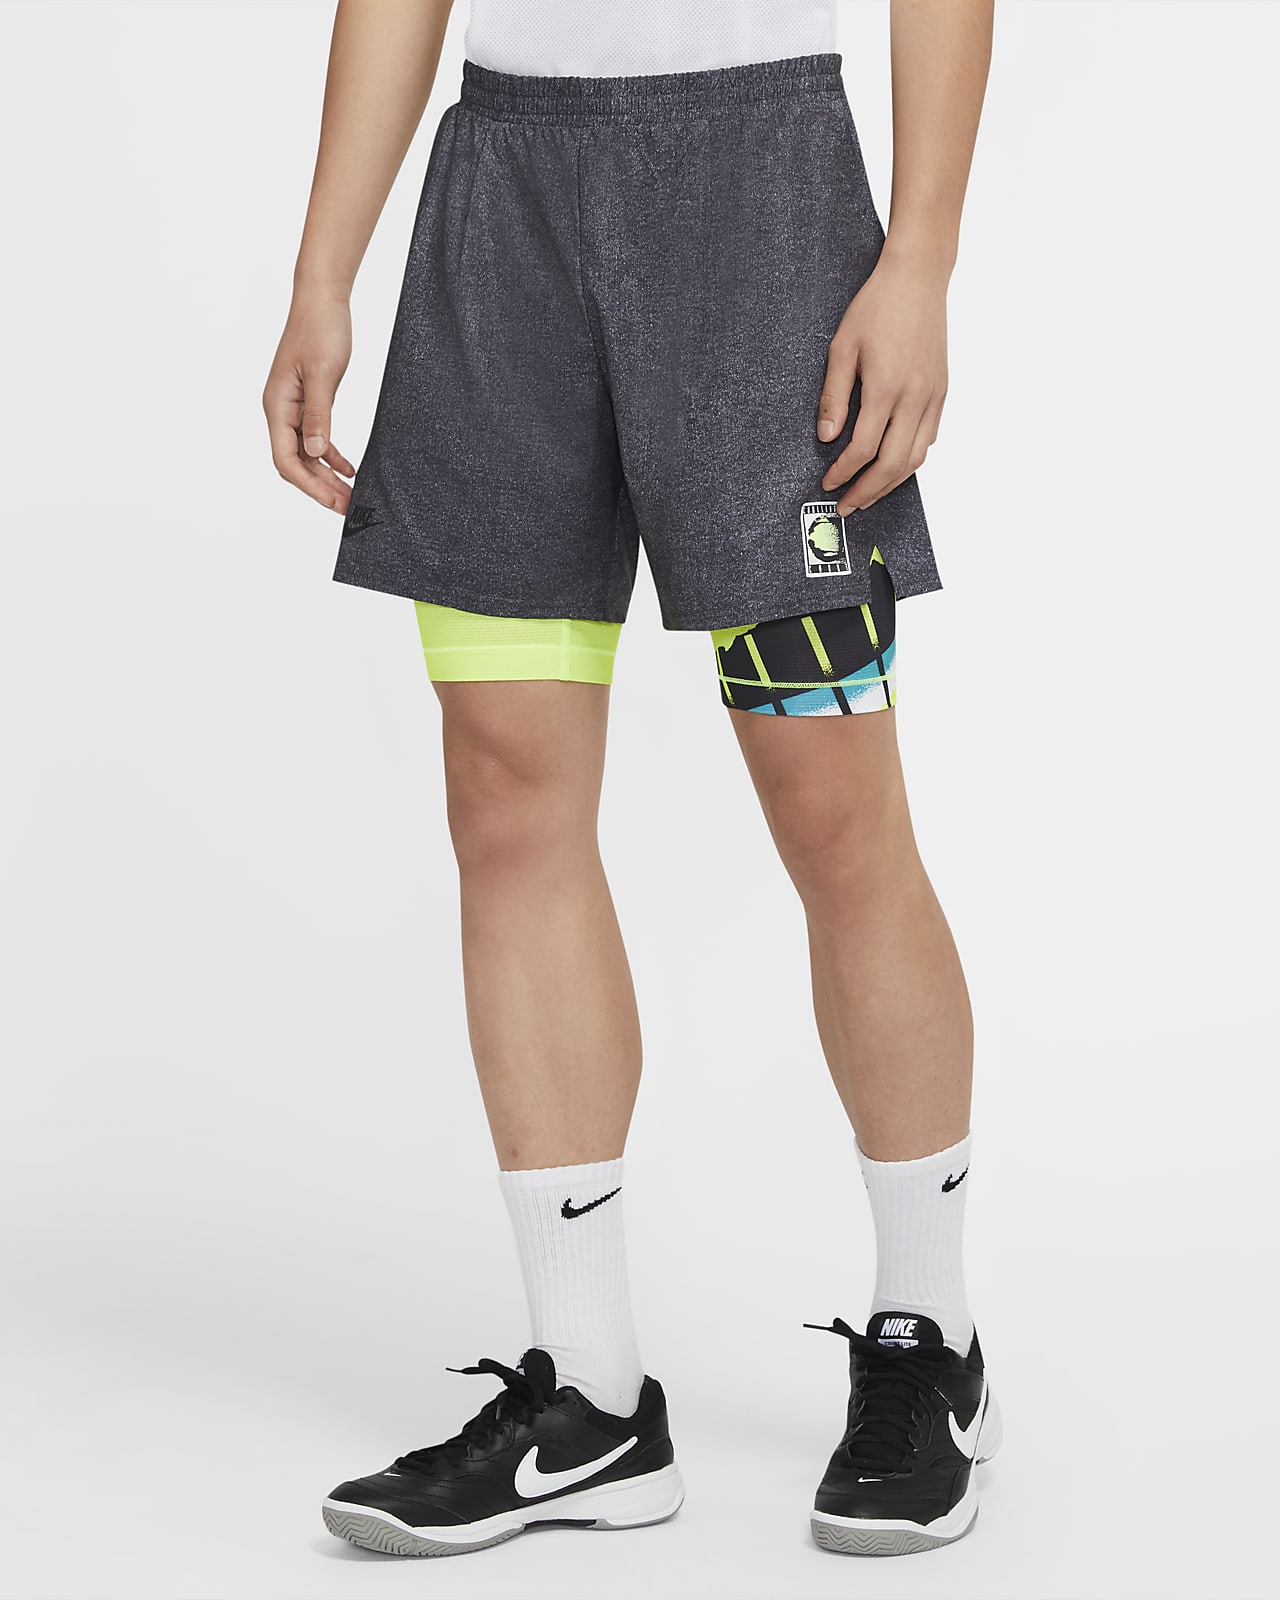 Shorts de tenis para hombre NikeCourt Flex Ace. Nike.com